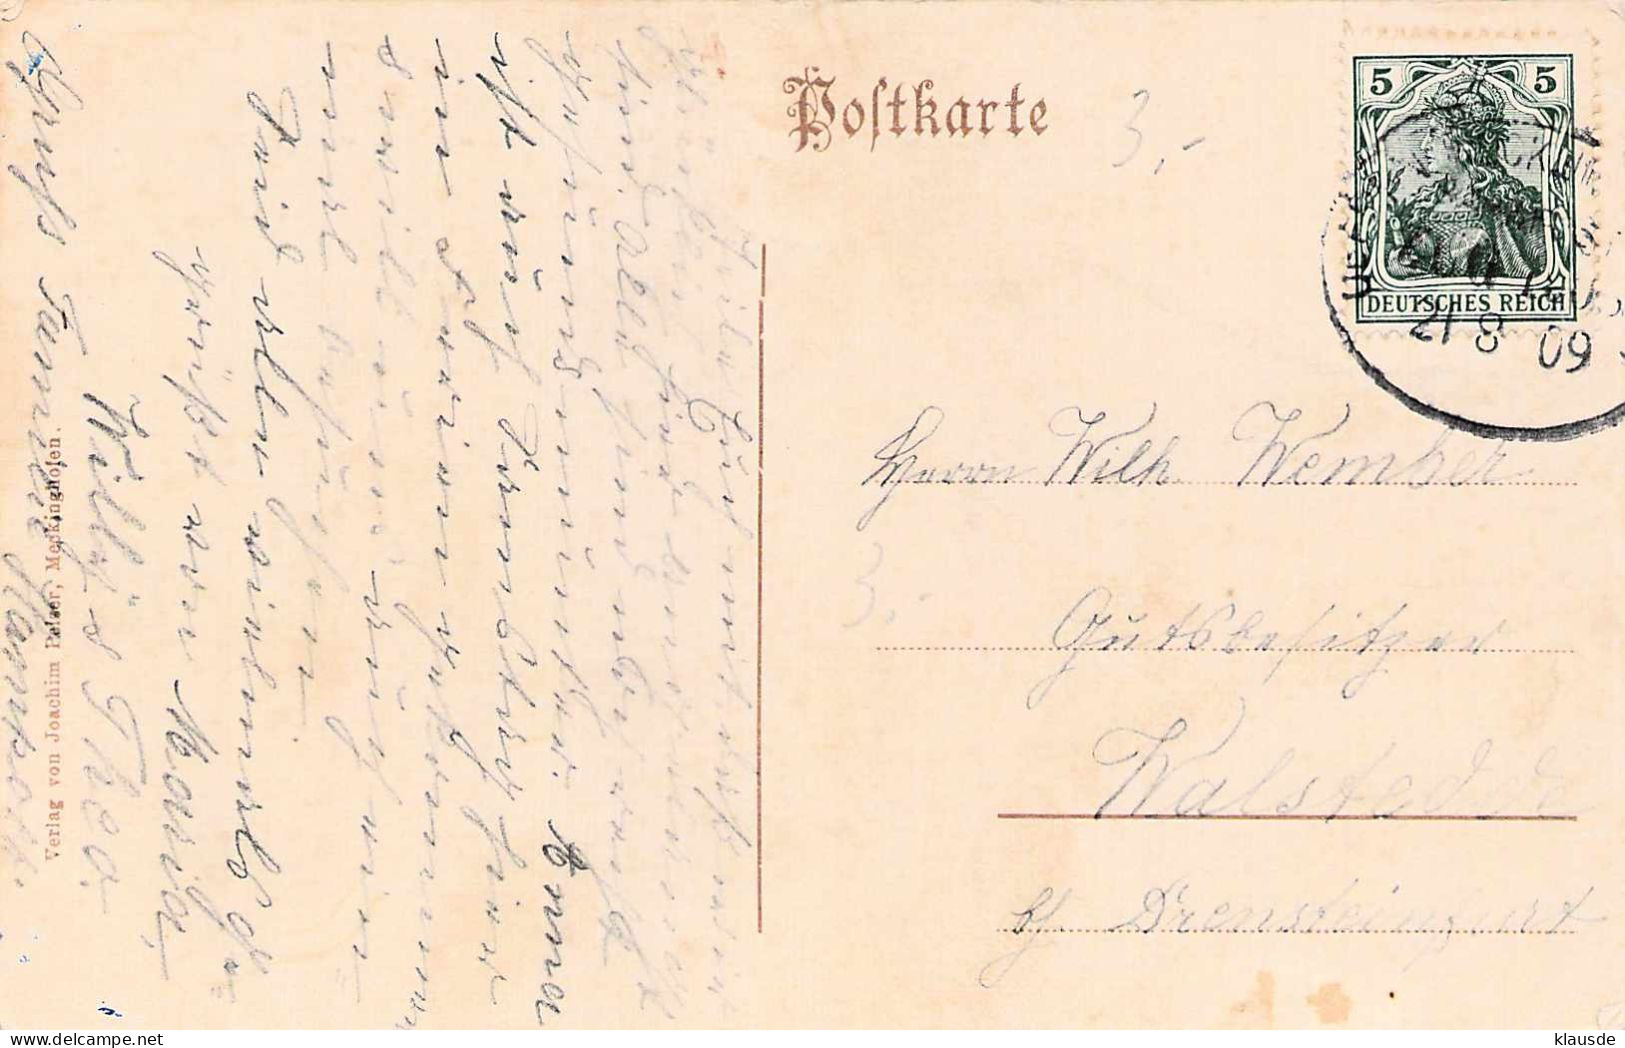 Schiffshebewerk Henrichenburg - Dortmund-Ems-Kanal Gel.1909 Bahnpost - Castrop-Rauxel